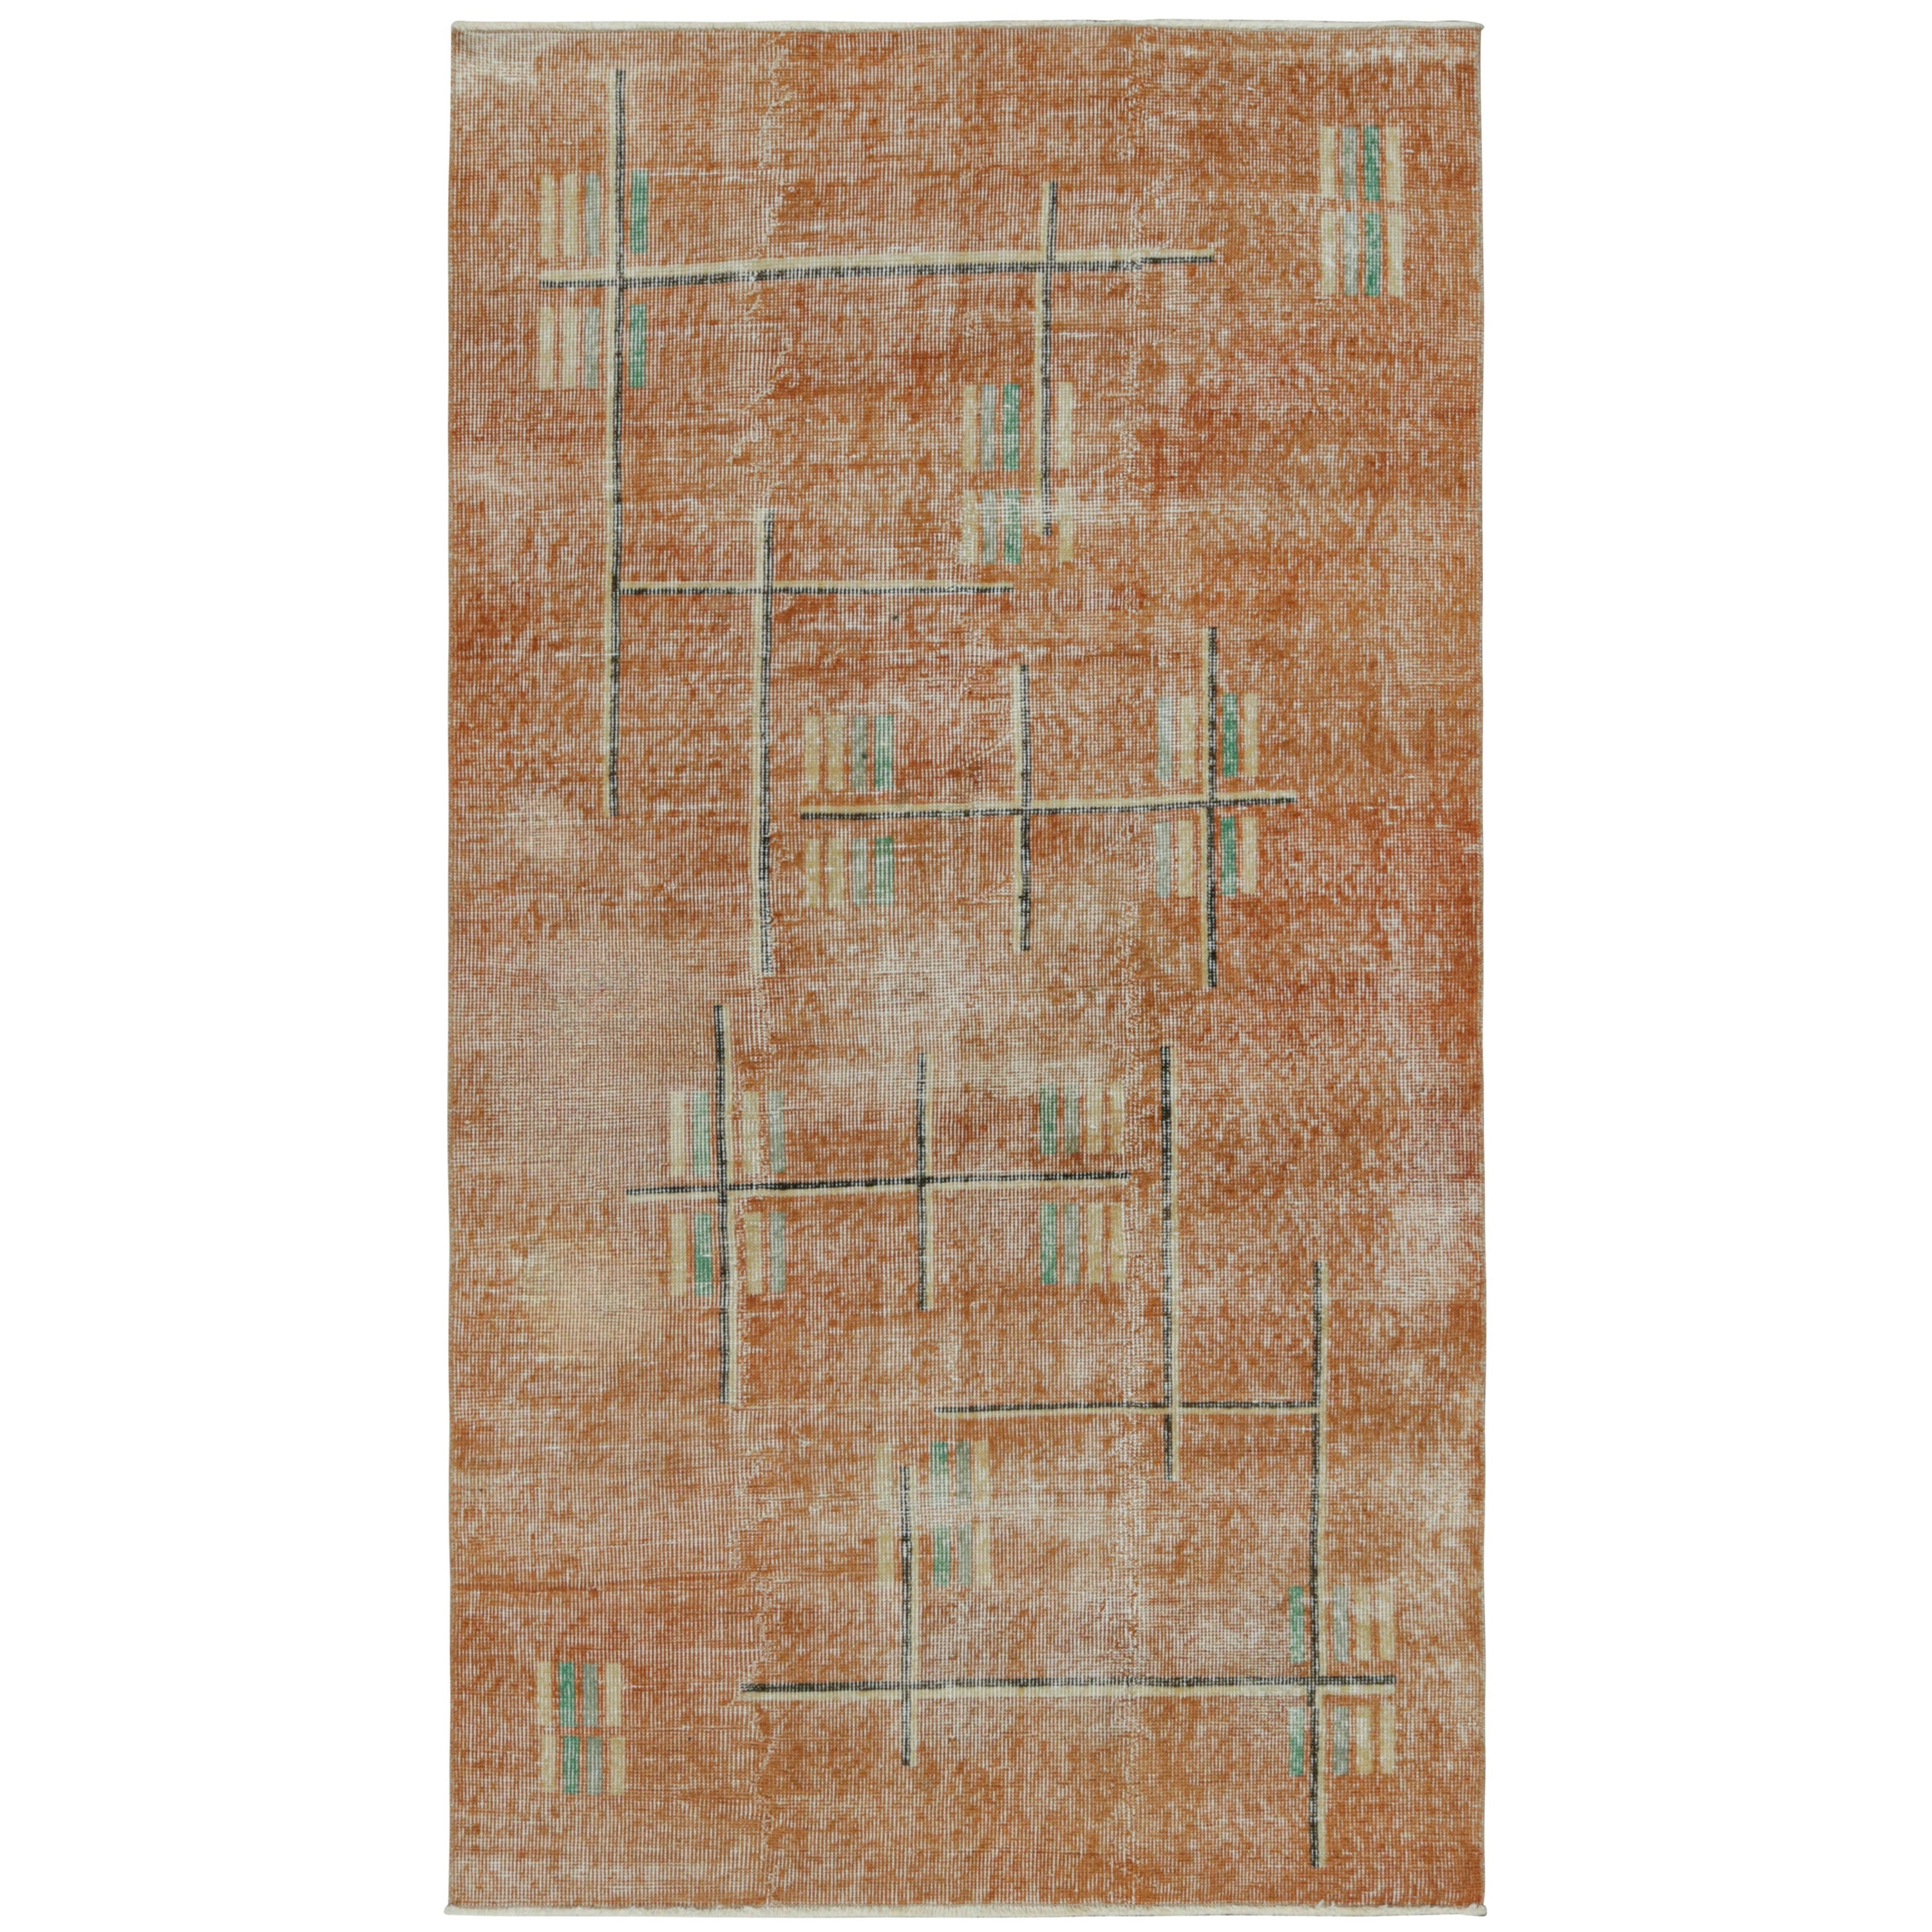 Vintage Zeki Müren Teppich in Rost mit polychromen Mustern, von Rug & Kilim